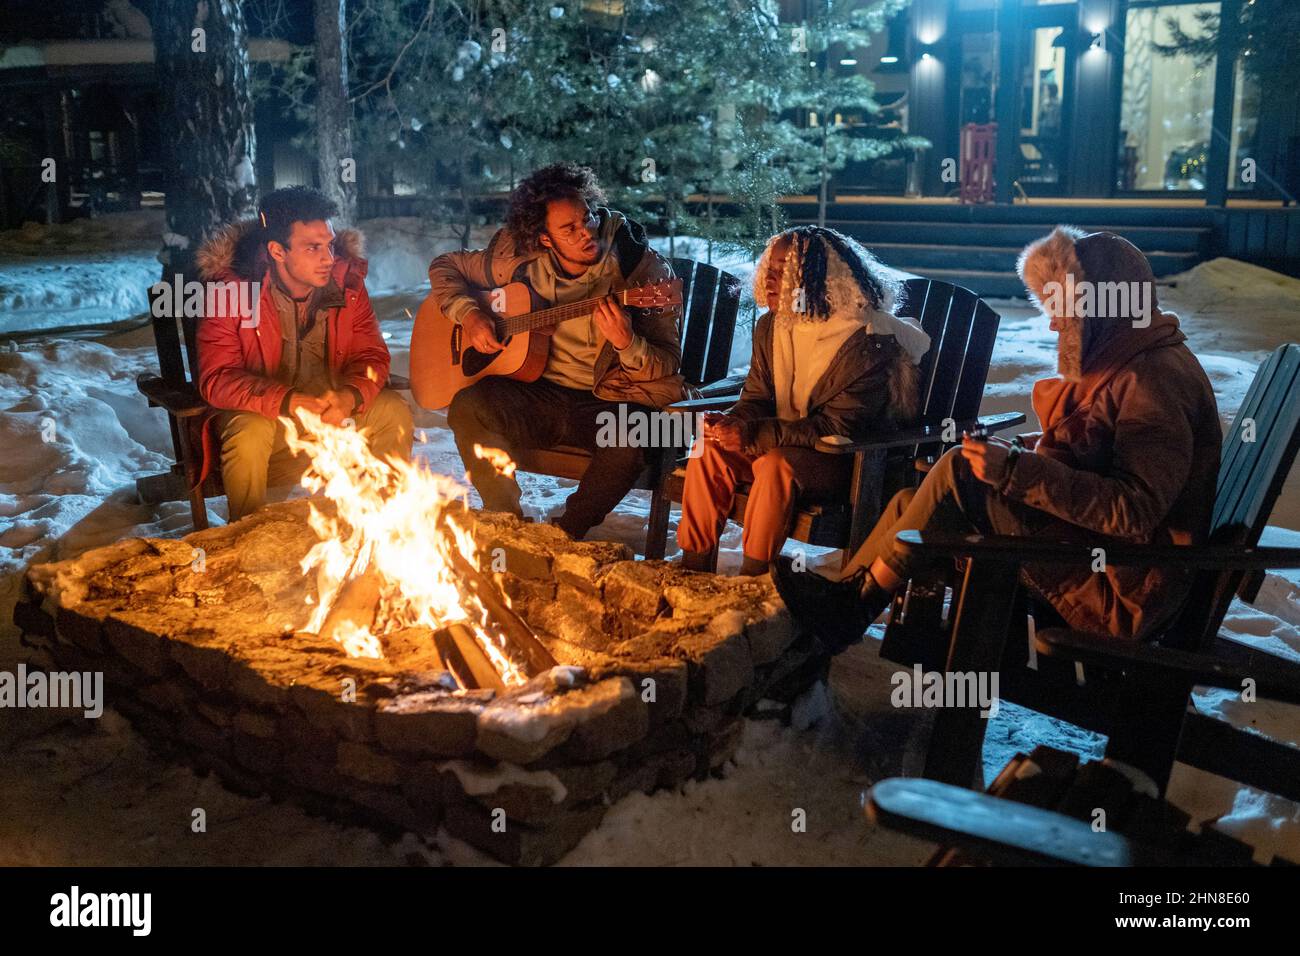 Gruppo di amici che suonano la chitarra e cantano insieme mentre si siedono vicino al fuoco all'aperto nella sera d'inverno Foto Stock